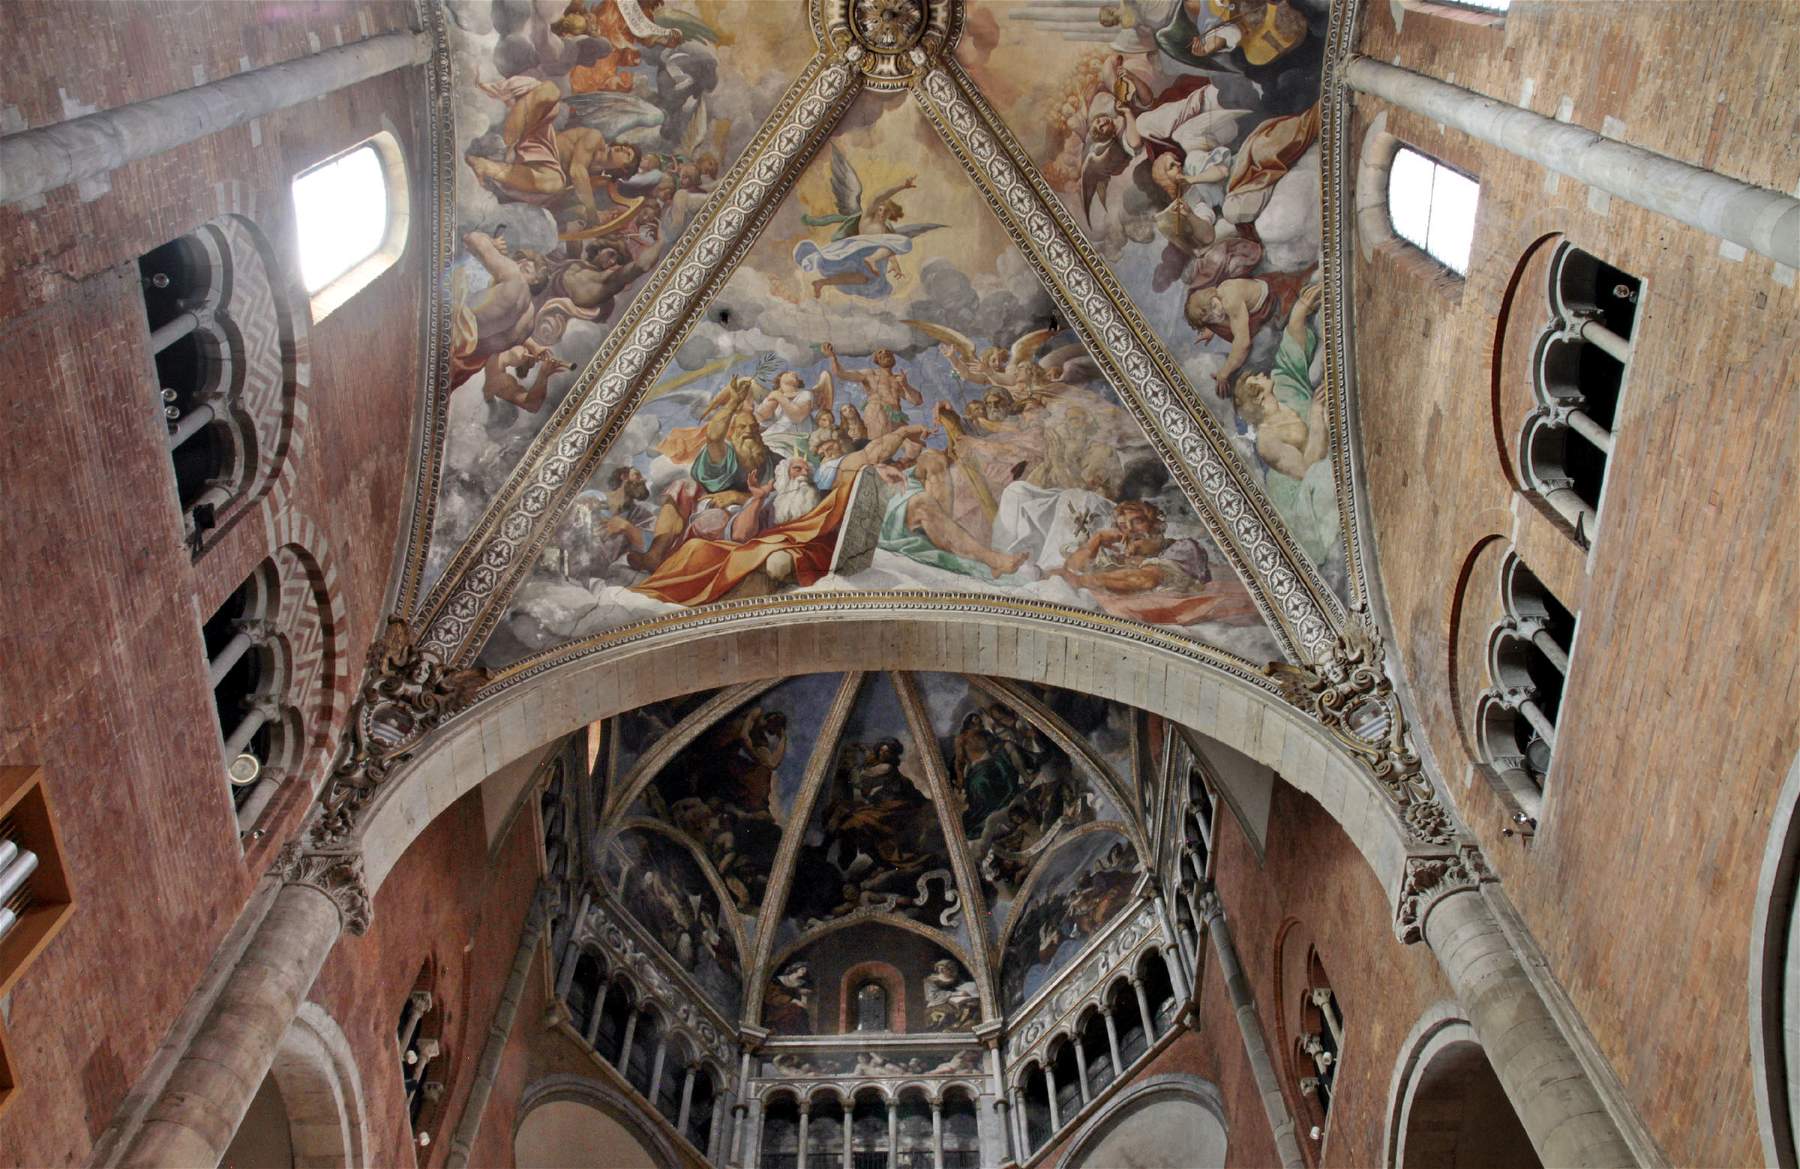 À Piacenza, pendant trois mois, il sera possible de monter sur la coupole de la cathédrale pour voir les fresques de Ludovico Carracci.